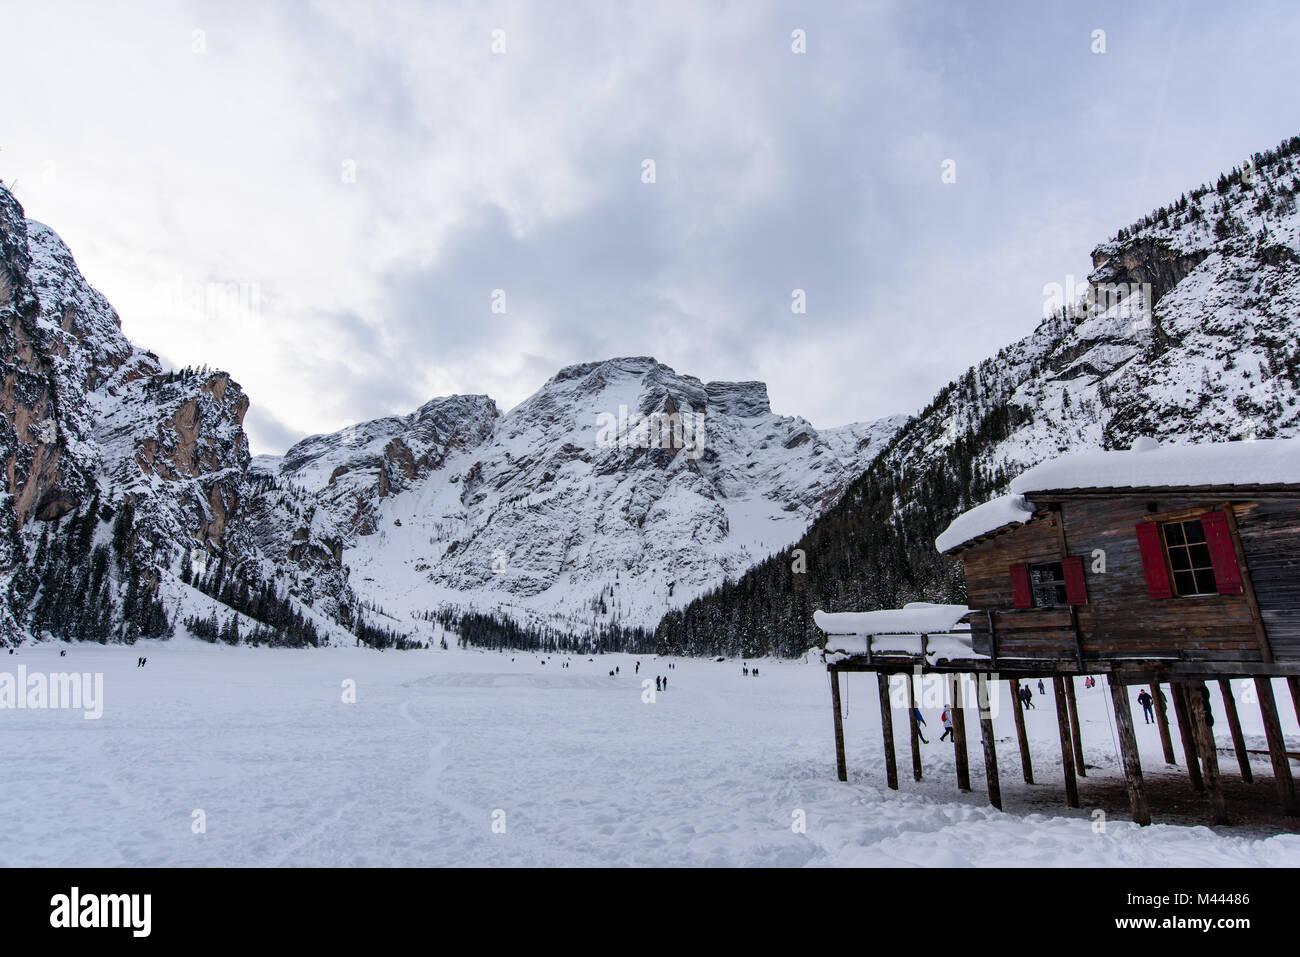 Dolomitas: Mejor época para viajar, clima en verano, nieve - Forum Italia